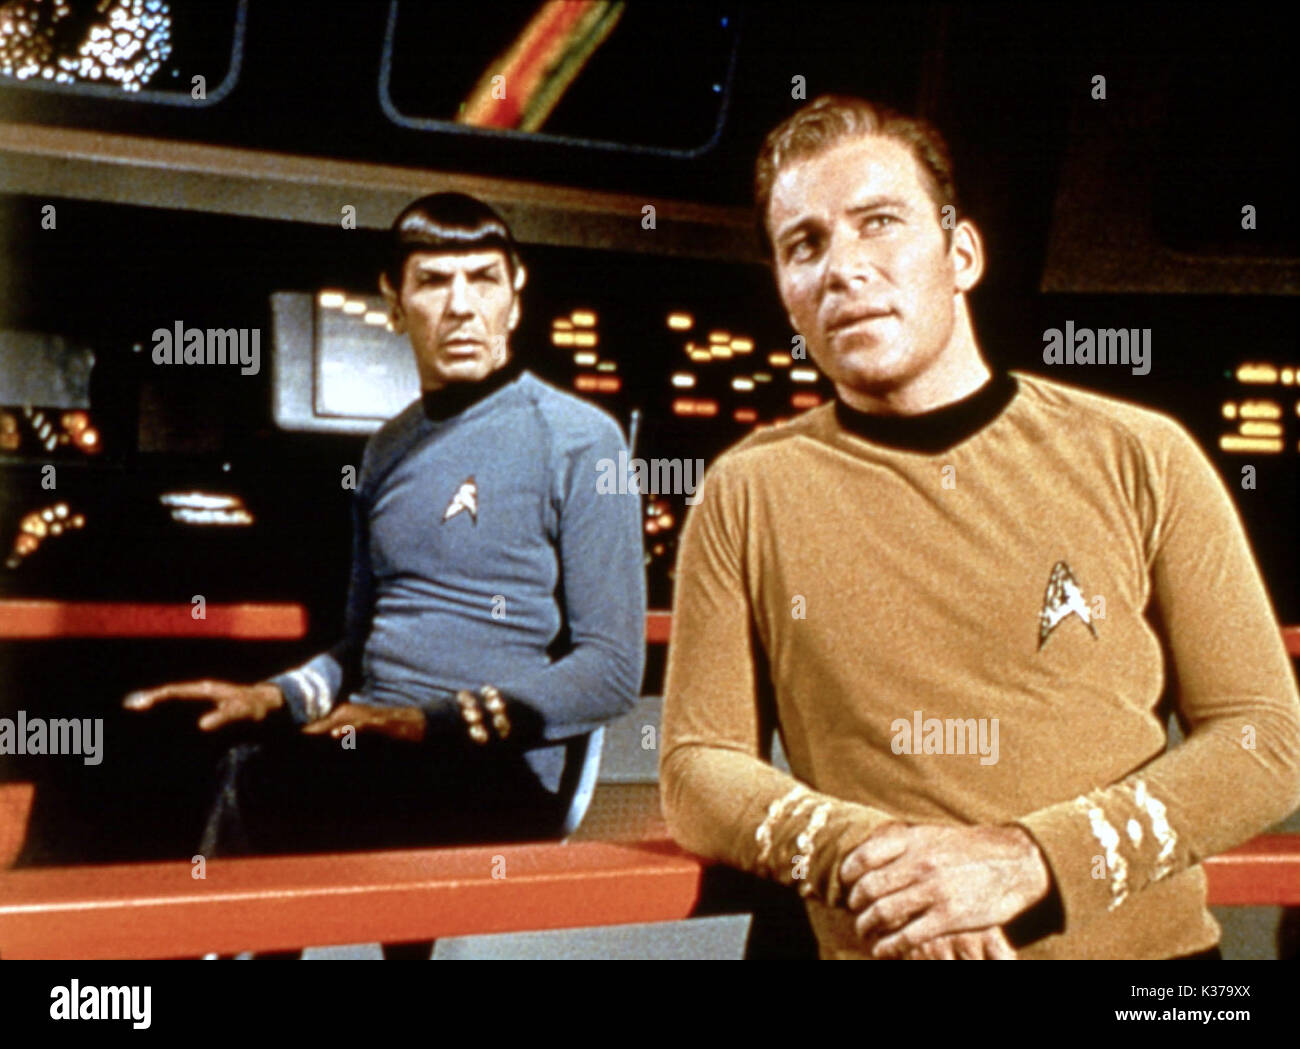 STAR TREK LEONARD NIMOY as Mr Spock, WILLIAM SHATNER as Captain James T Kirk STAR TREK Stock Photo